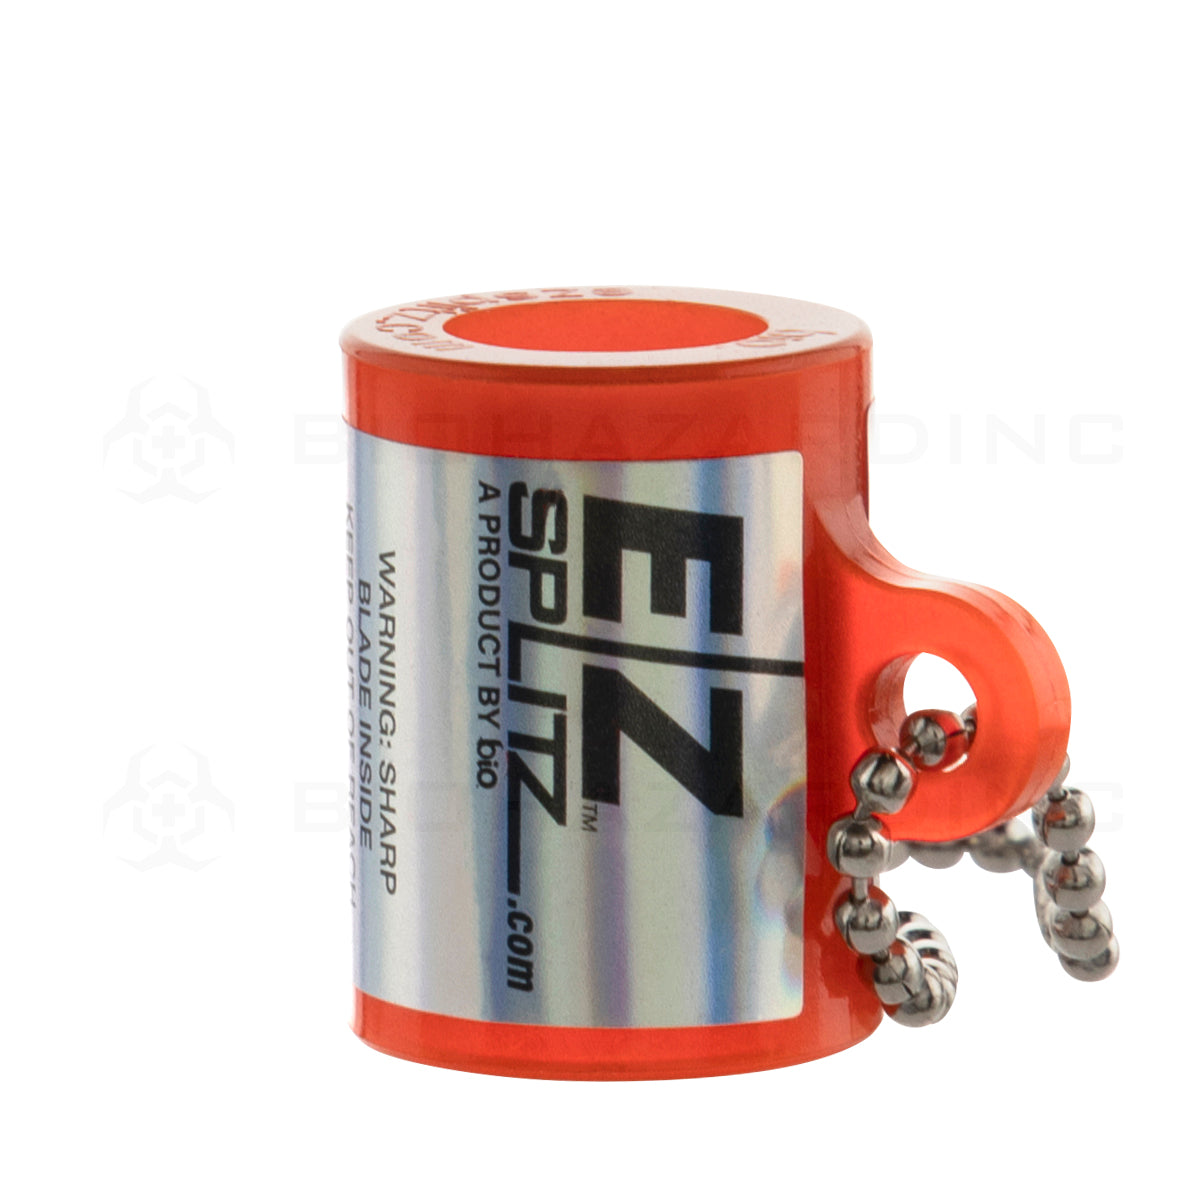 EZ Splitz | 'Retail Display' Cigarillo Blunt Splitter - Halloween Edition | Small - 60 Count Blunt Splitter EZ Splitz   